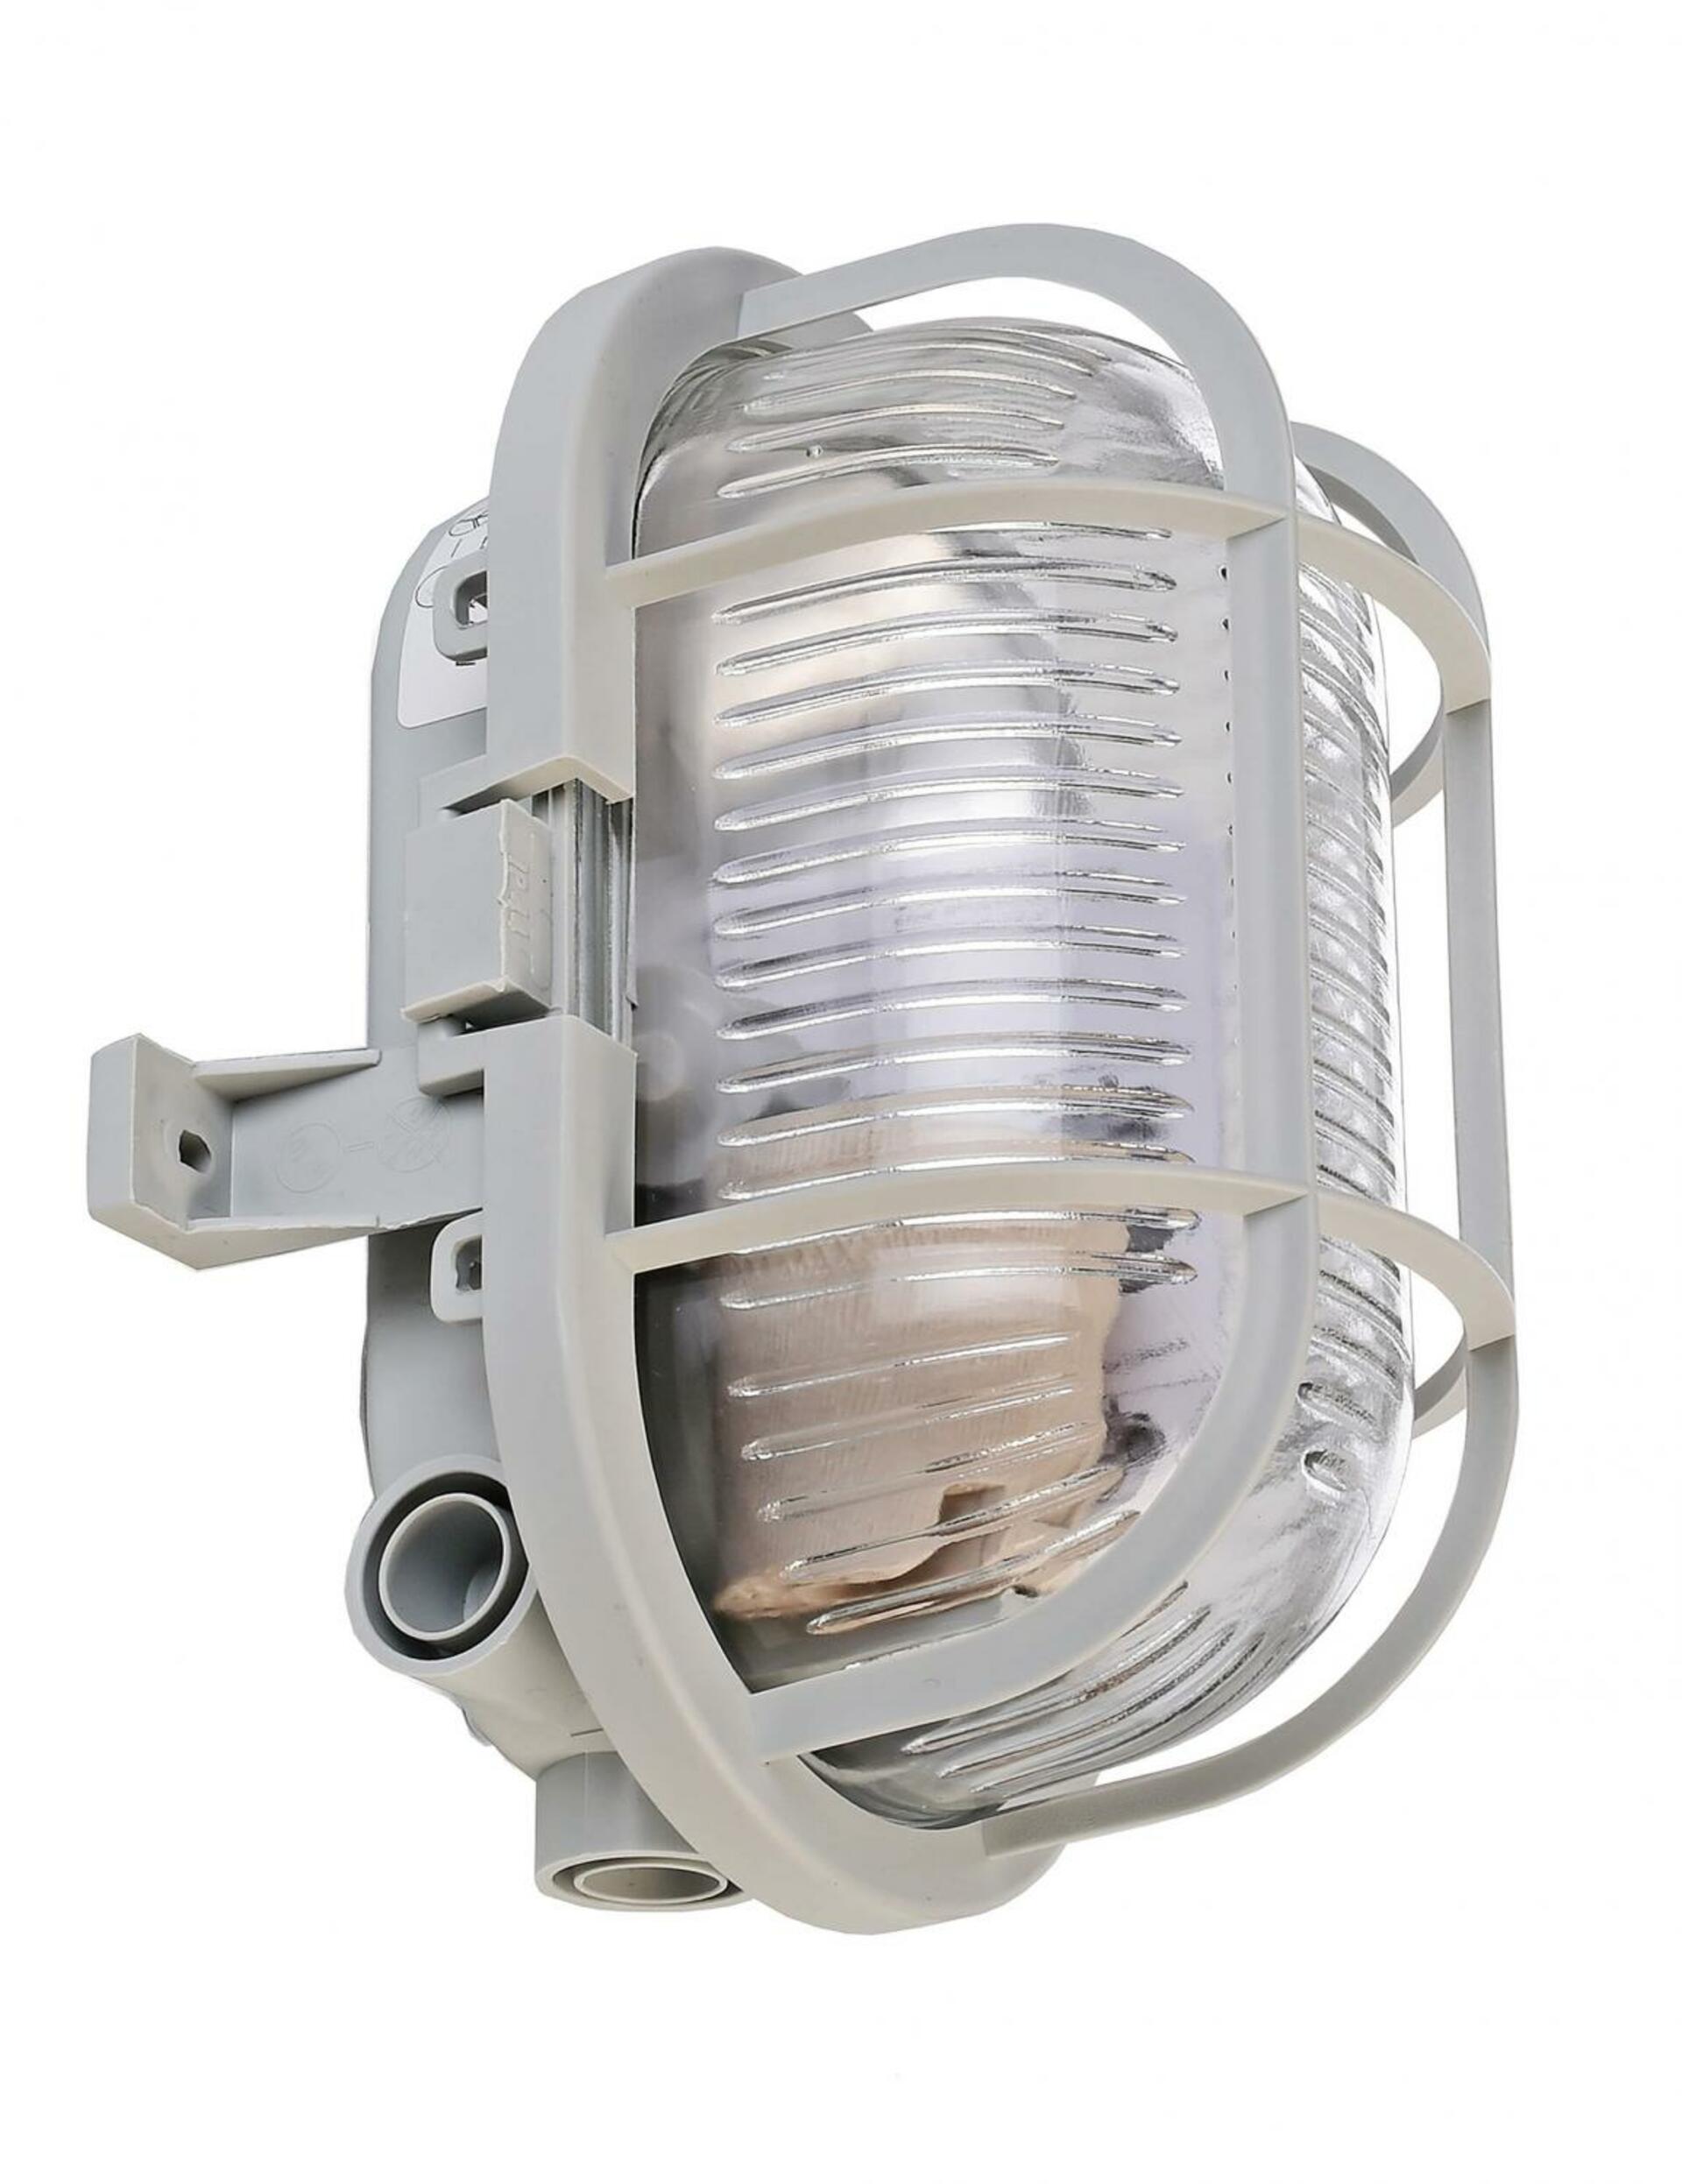 Light Impressions Deko-Light nástěnné a stropní svítidlo Syrma Oval šedá 220-240V AC/50-60Hz E27 1x max. 42,00 W 170 šedá 401013